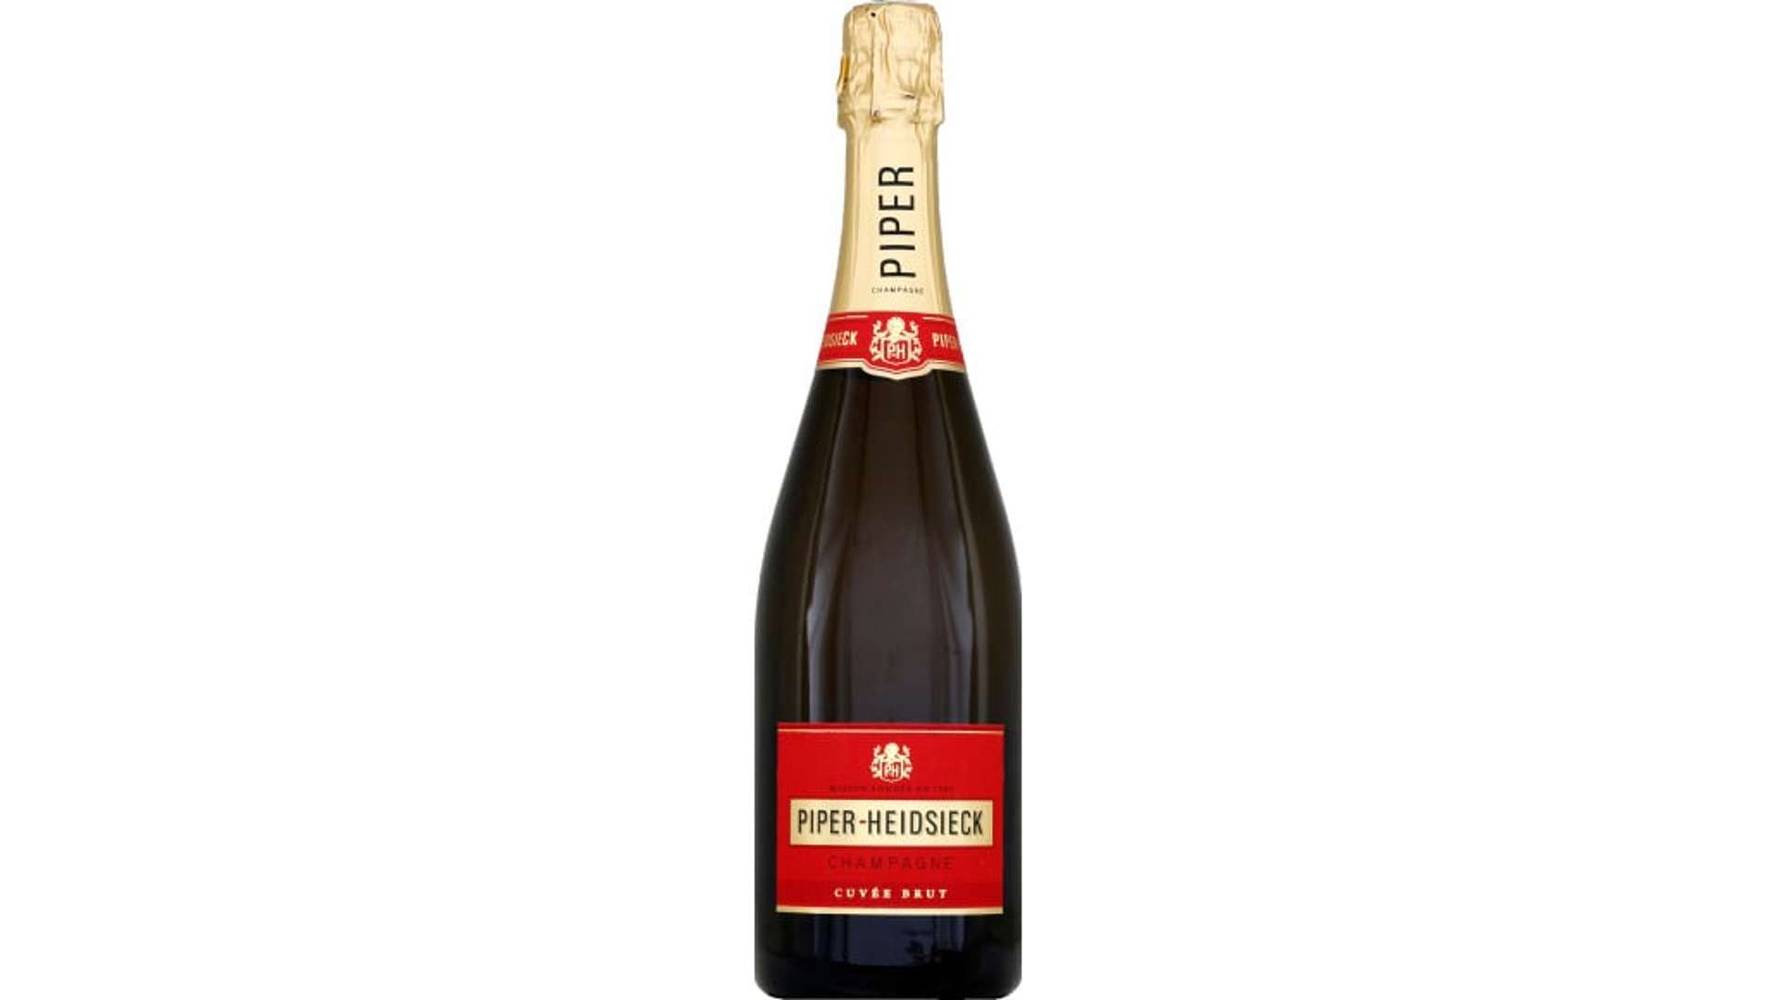 Piper Heidsieck Champagne AOP, brut La bouteille de 75cl